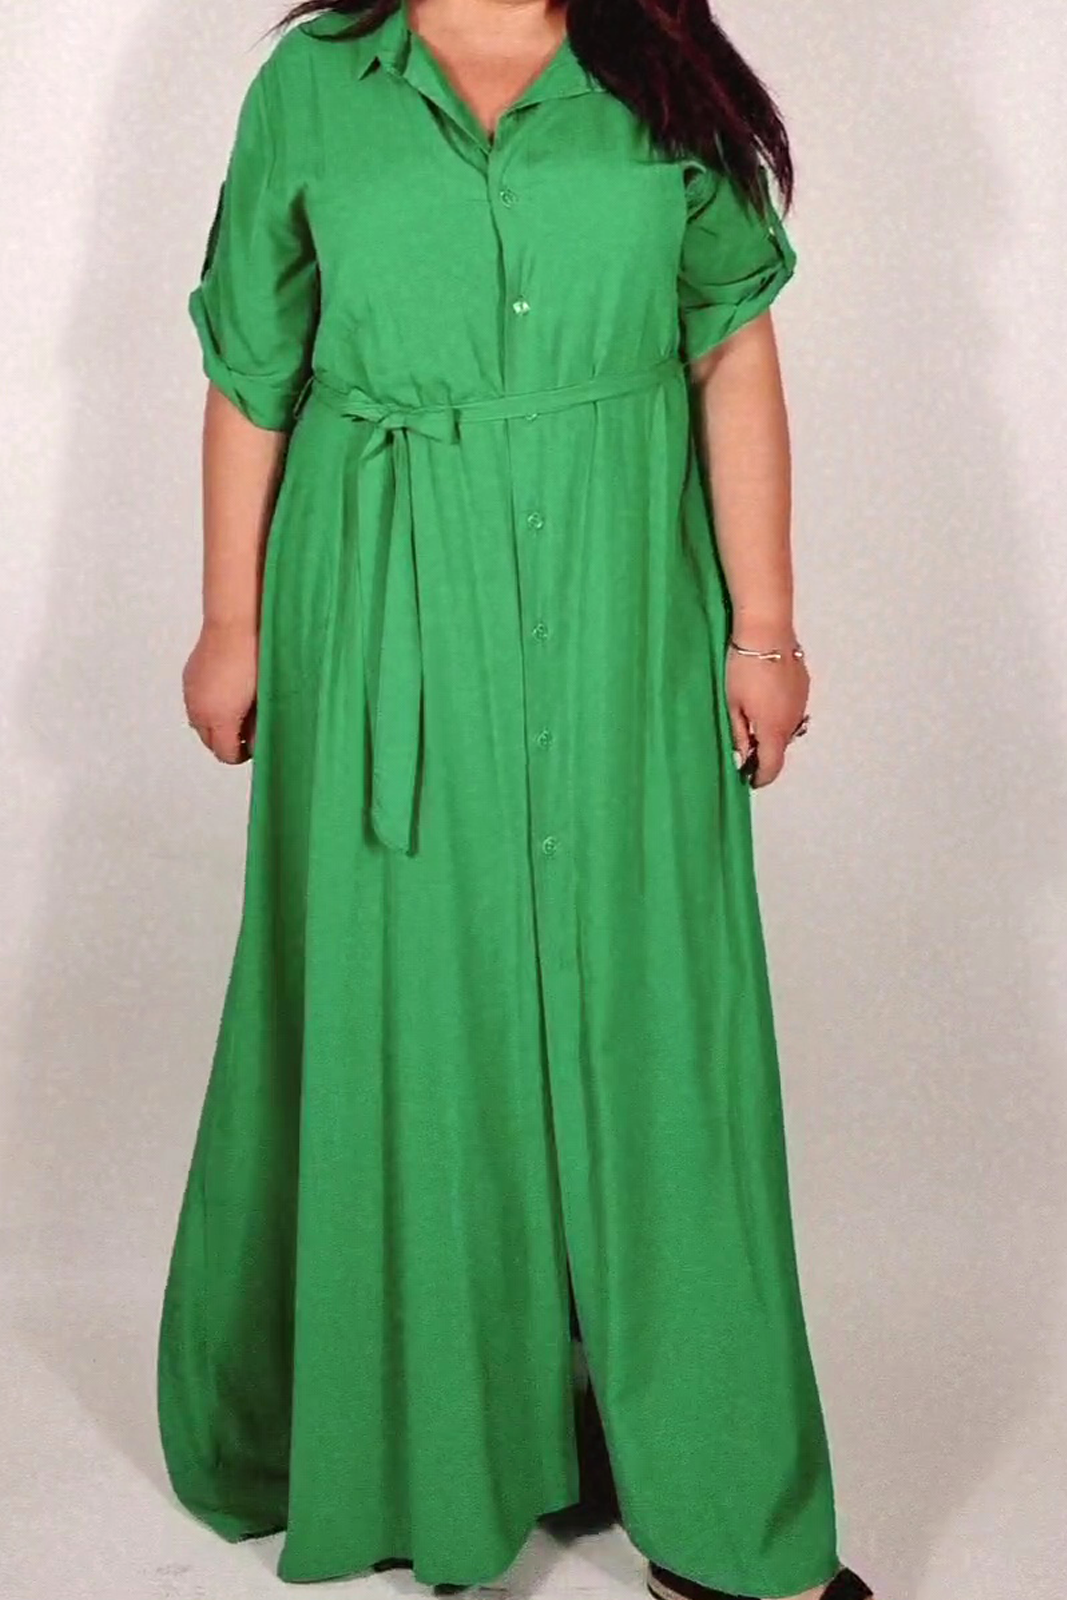 Φόρεμα πράσινο σεμιζιέ